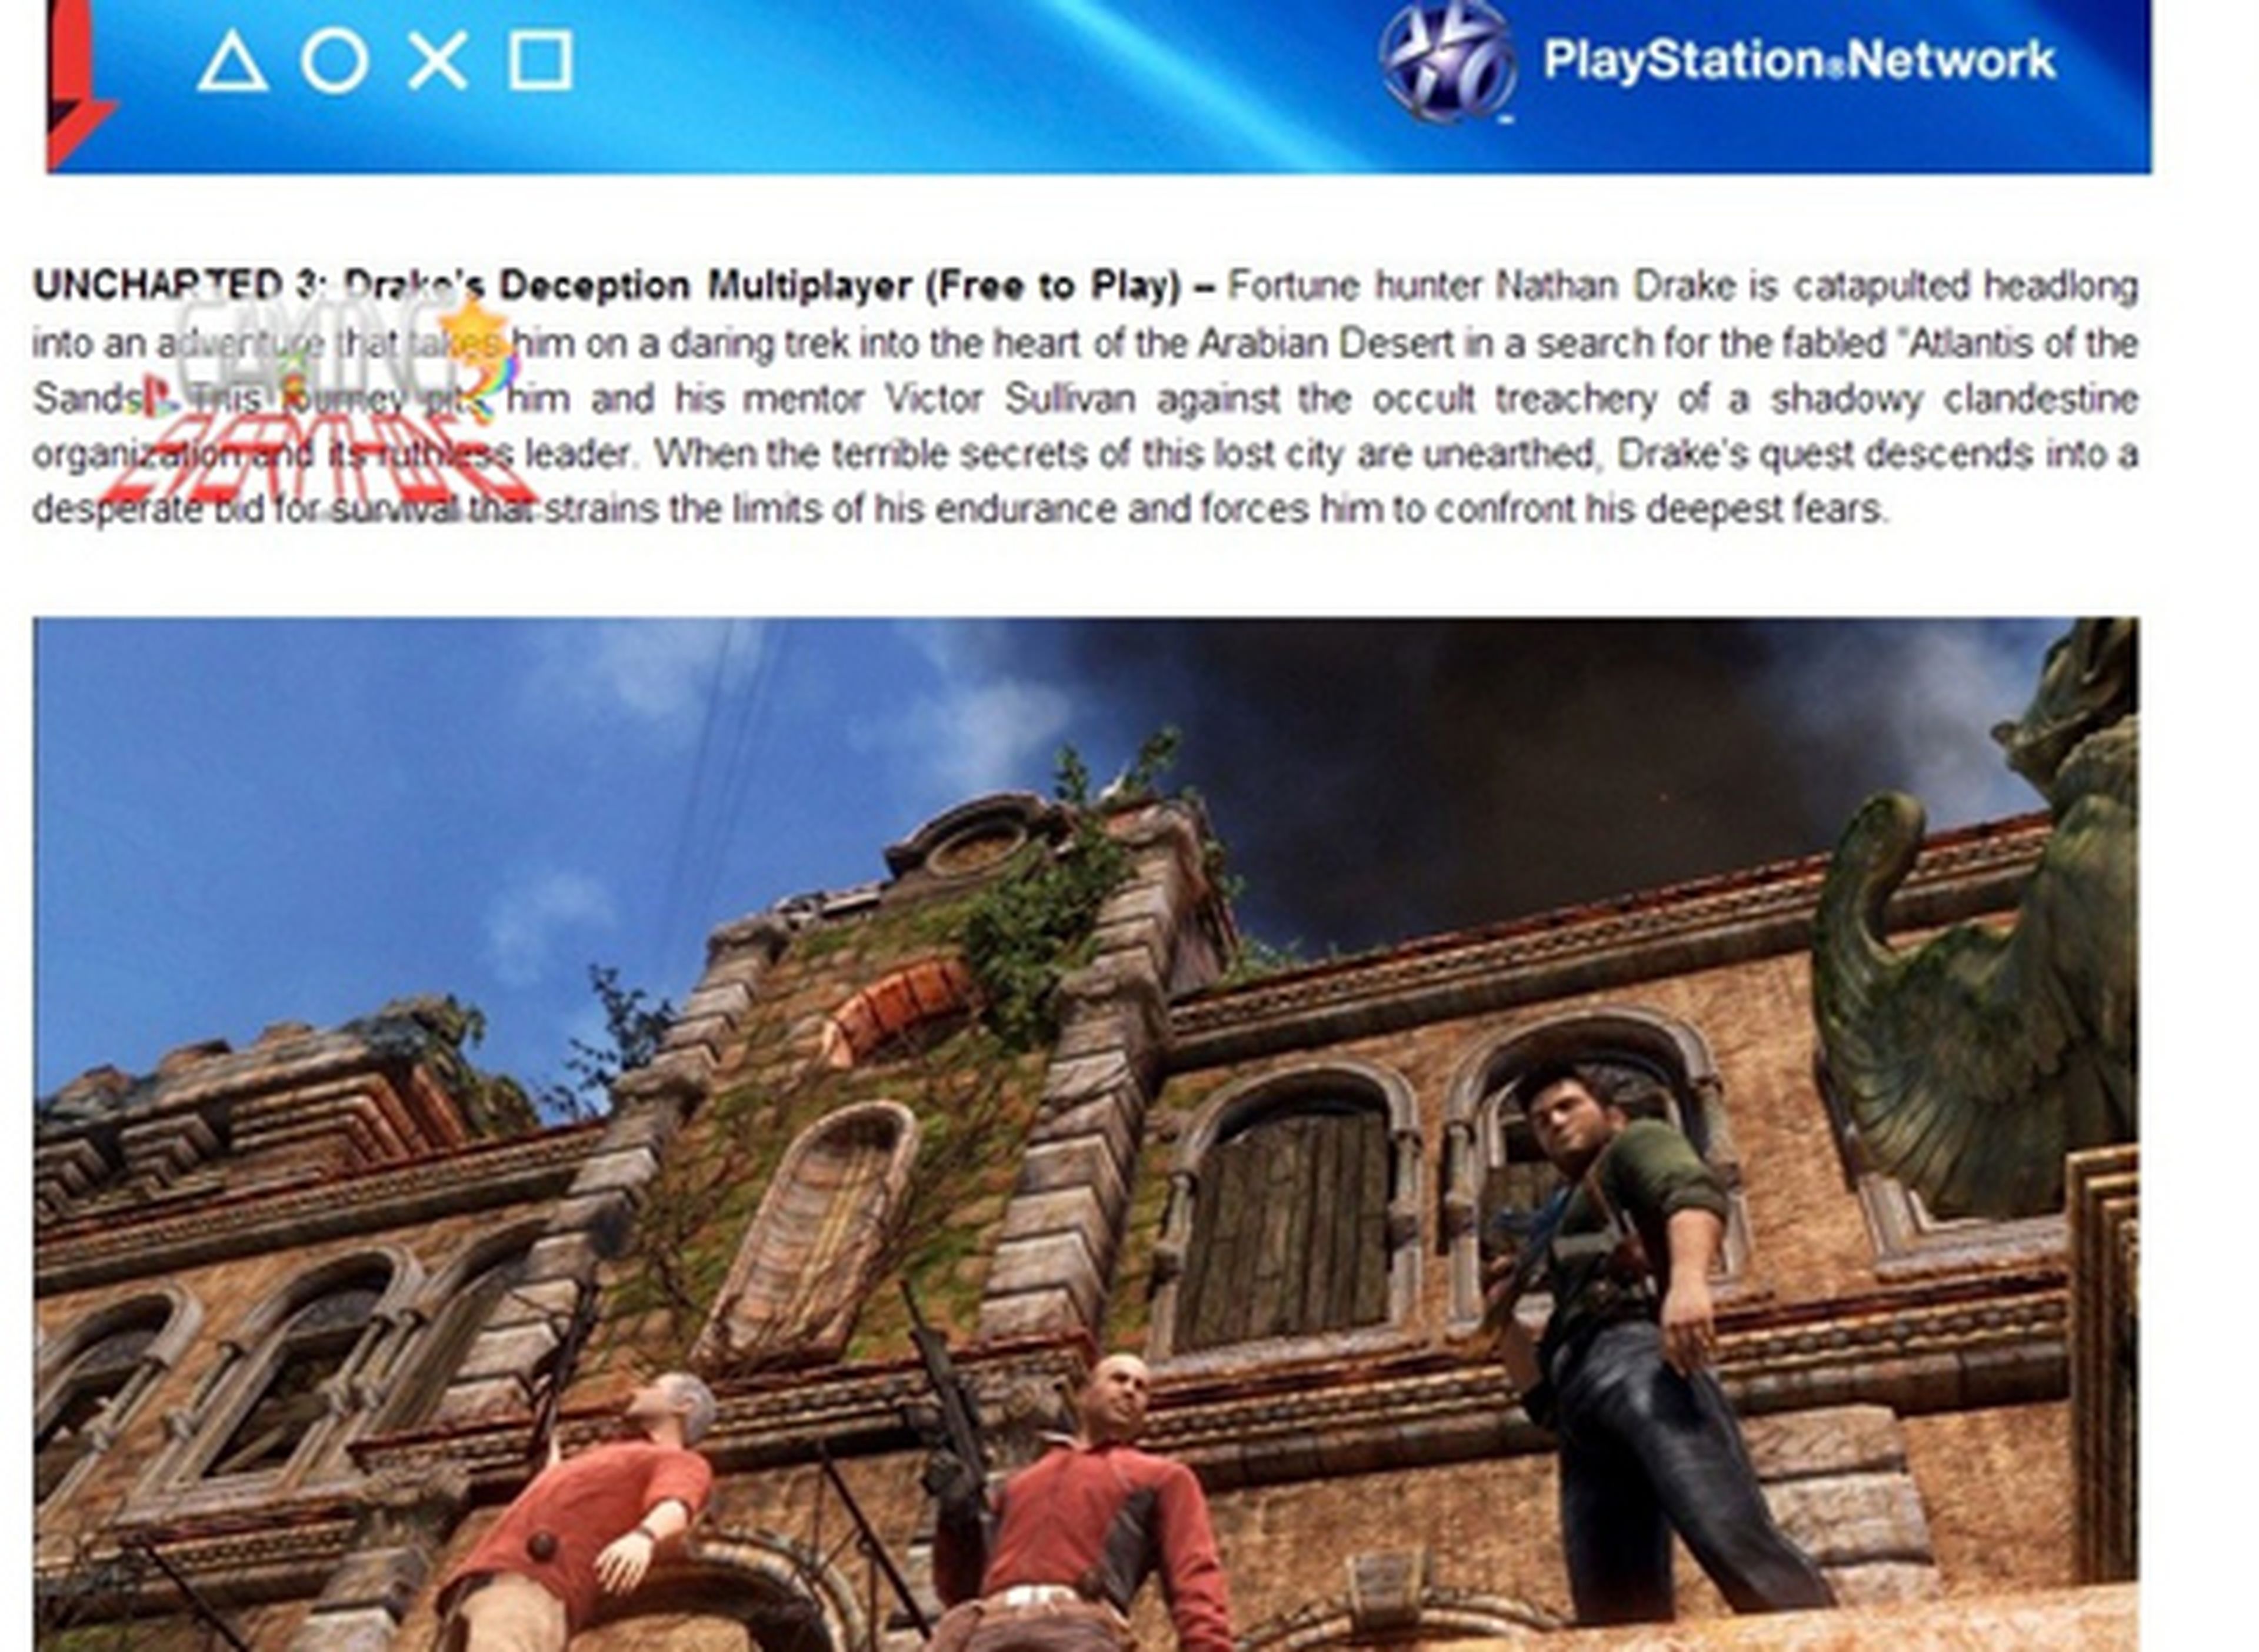 El multijugador de Uncharted 3 podría lanzarse en free to play